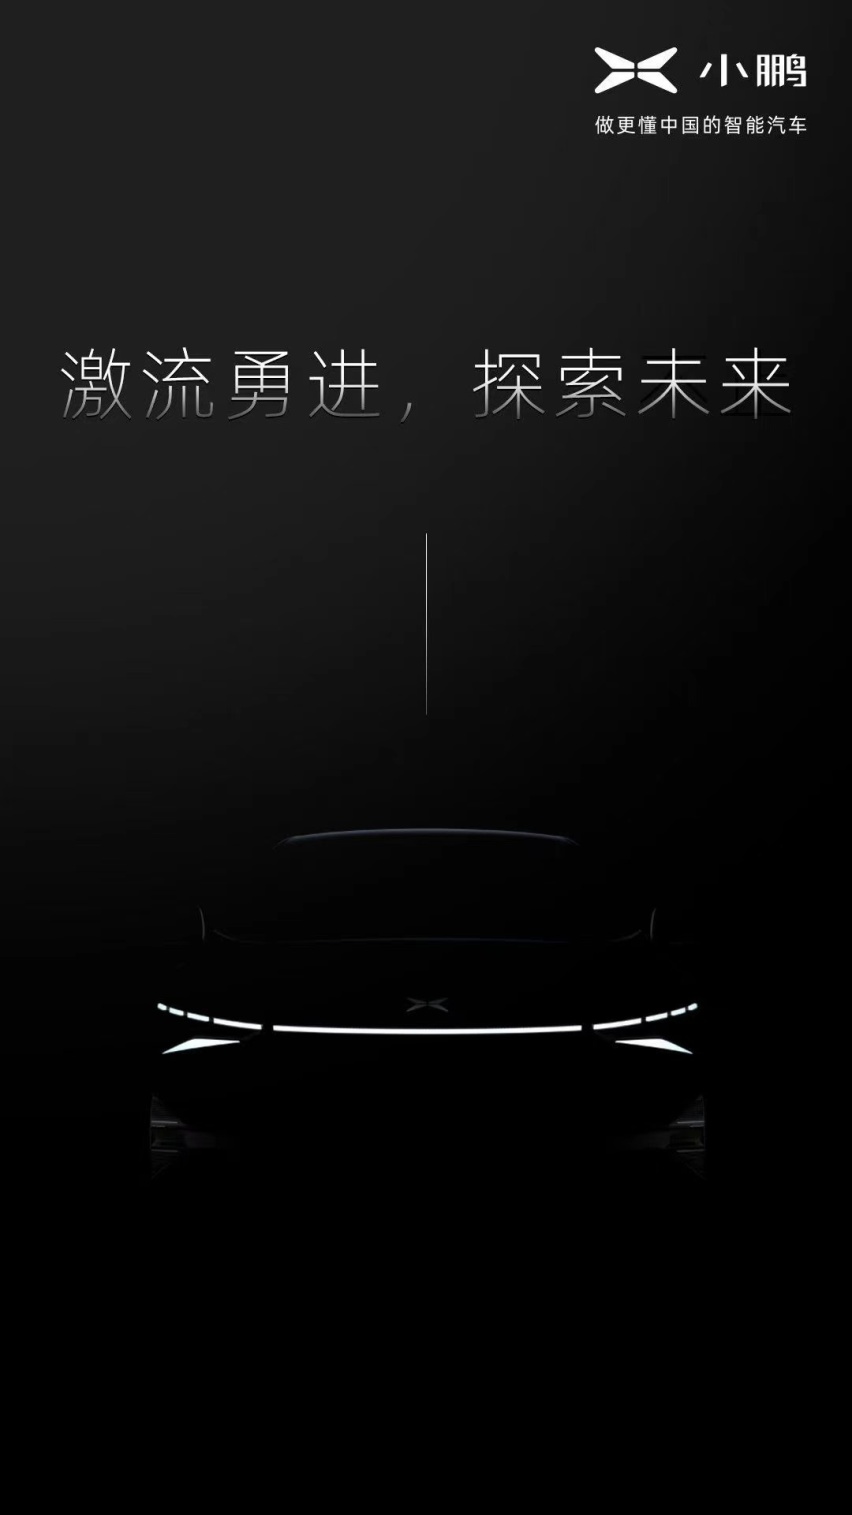 小鹏发布新车预告图 全球首款搭载激光雷达的量产智能汽车